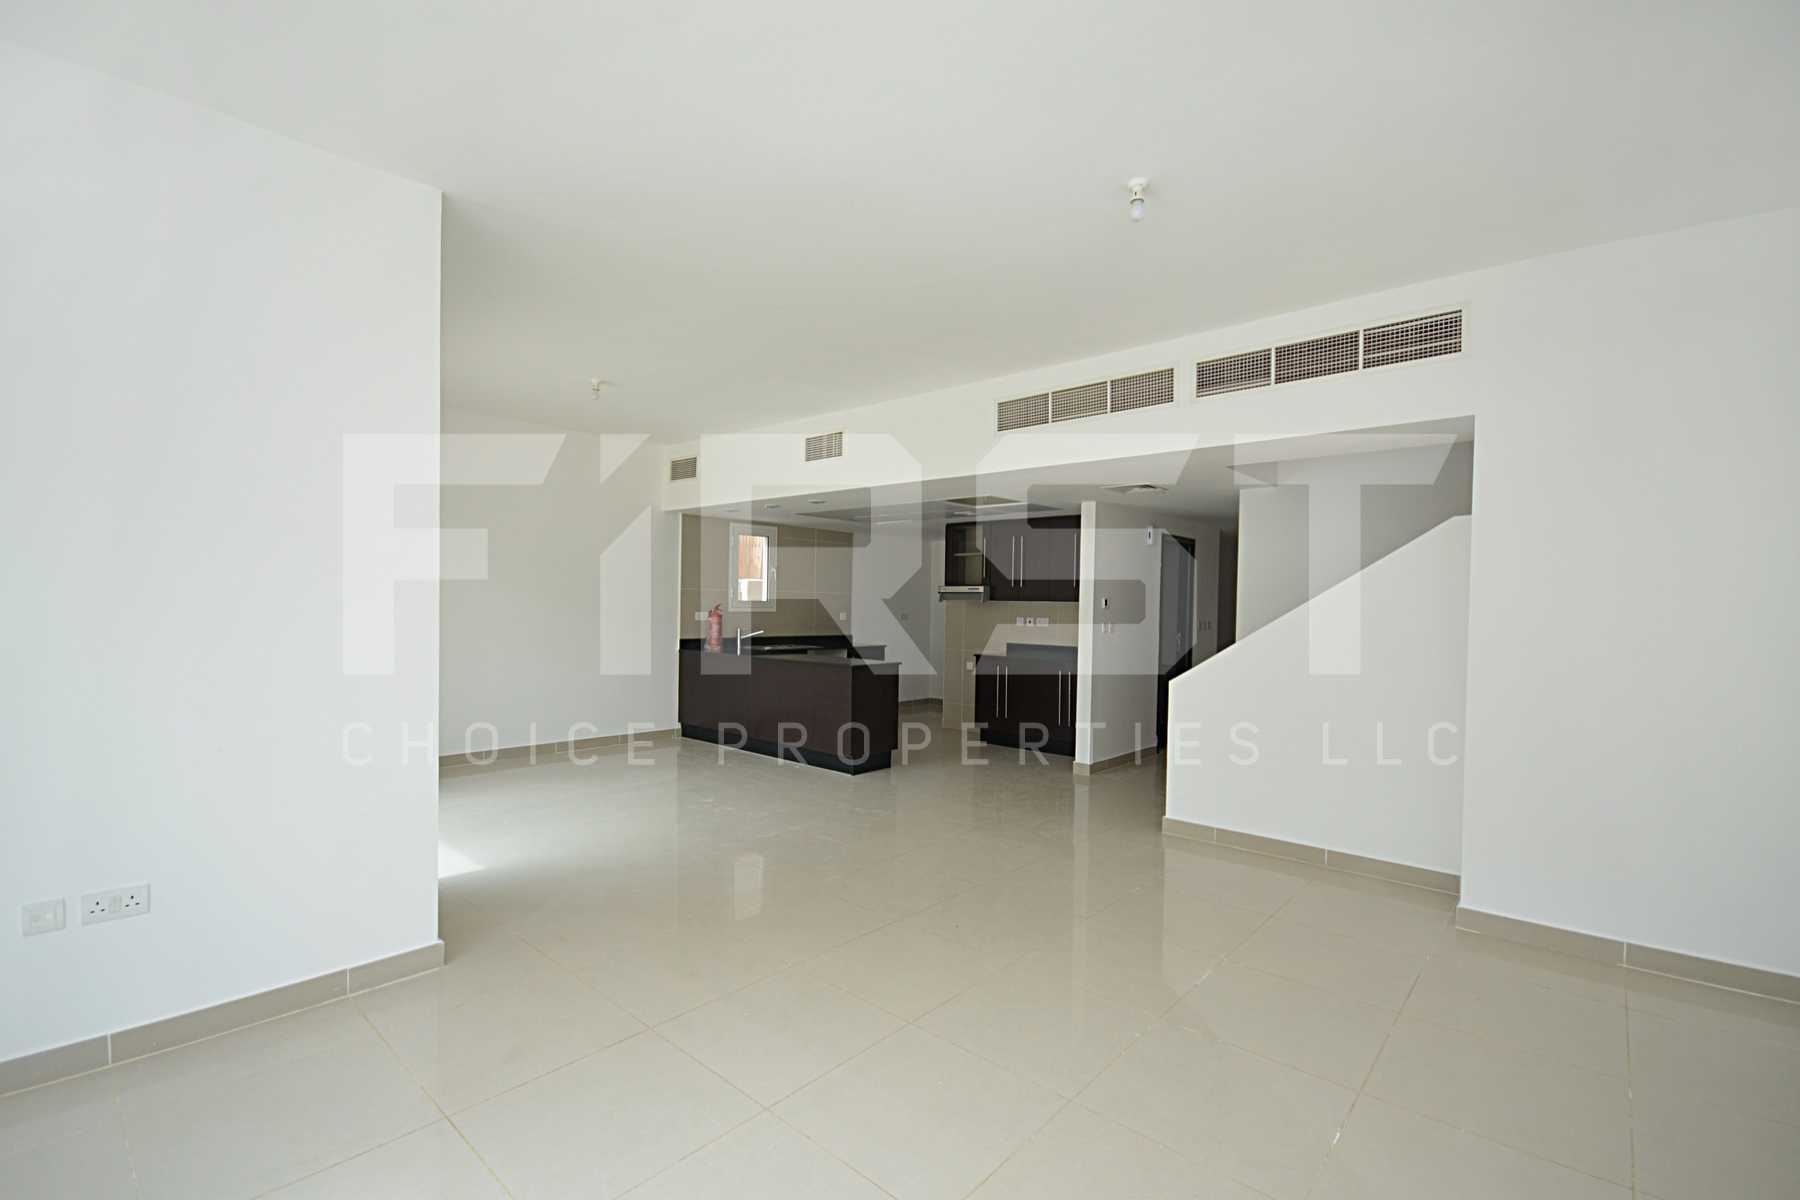 Internal Photo of 4 Bedroom Villa in Al Reef Villas Al Reef Abu Dhabi UAE 265.5 sq.m 2858 sq.ft (3).jpg